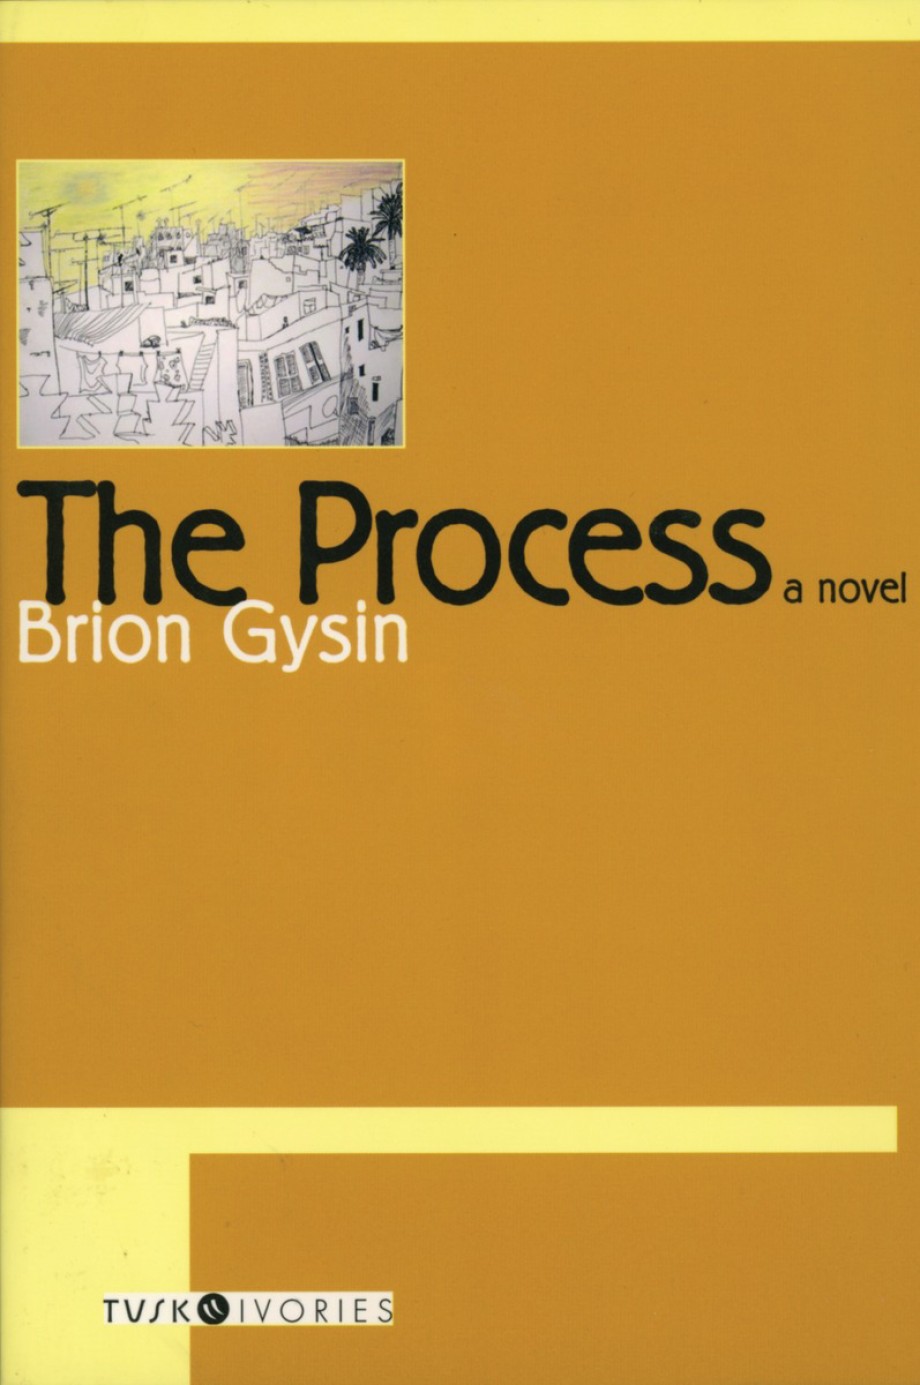 Process 